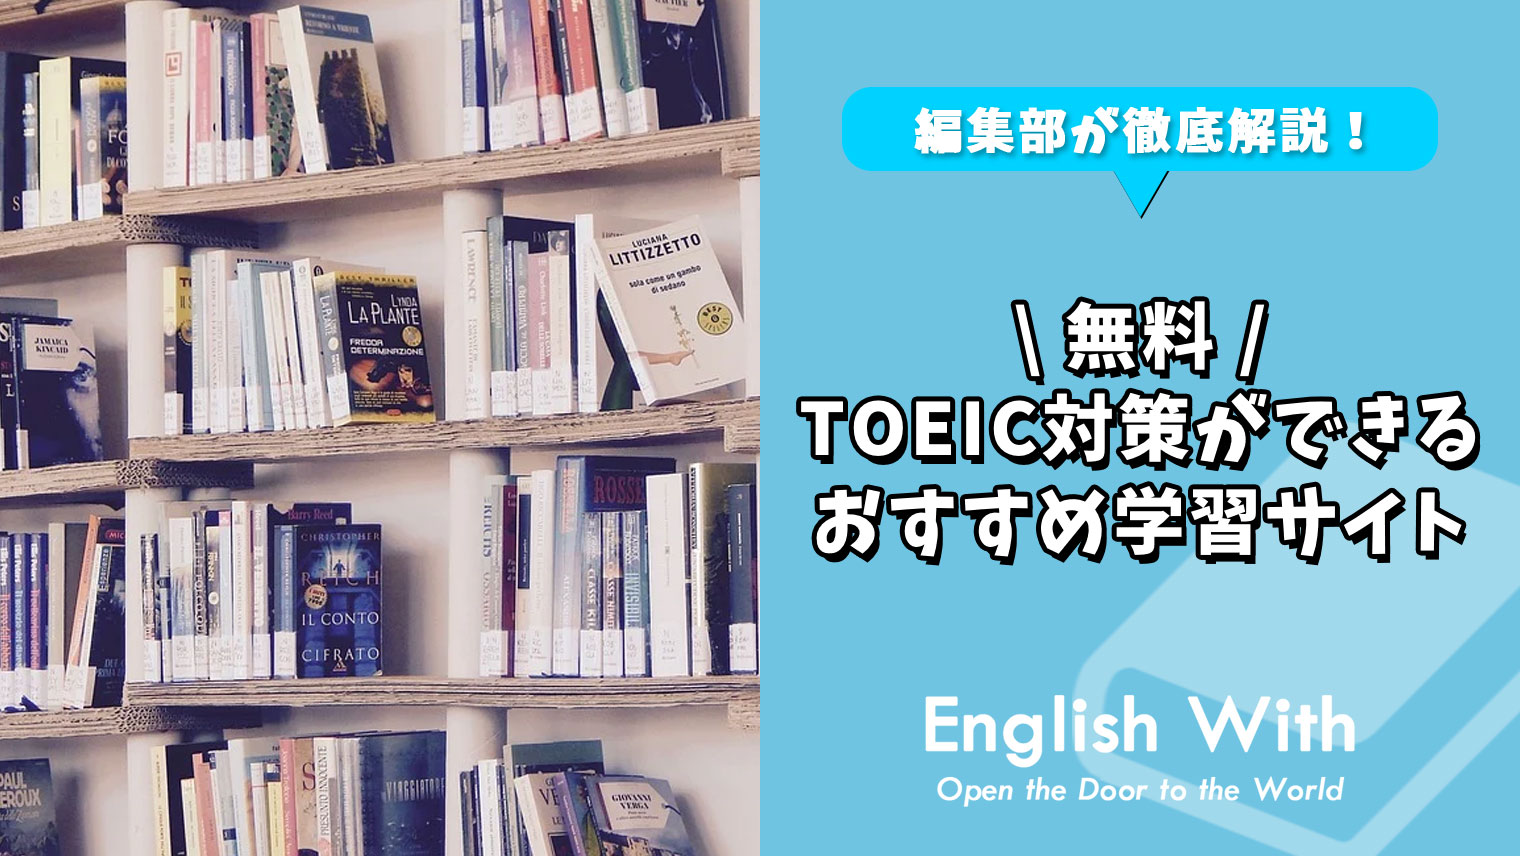 無料でtoeic対策ができるおすすめ学習サイト 10選 おすすめ英会話 英語学習の比較 ランキング English With